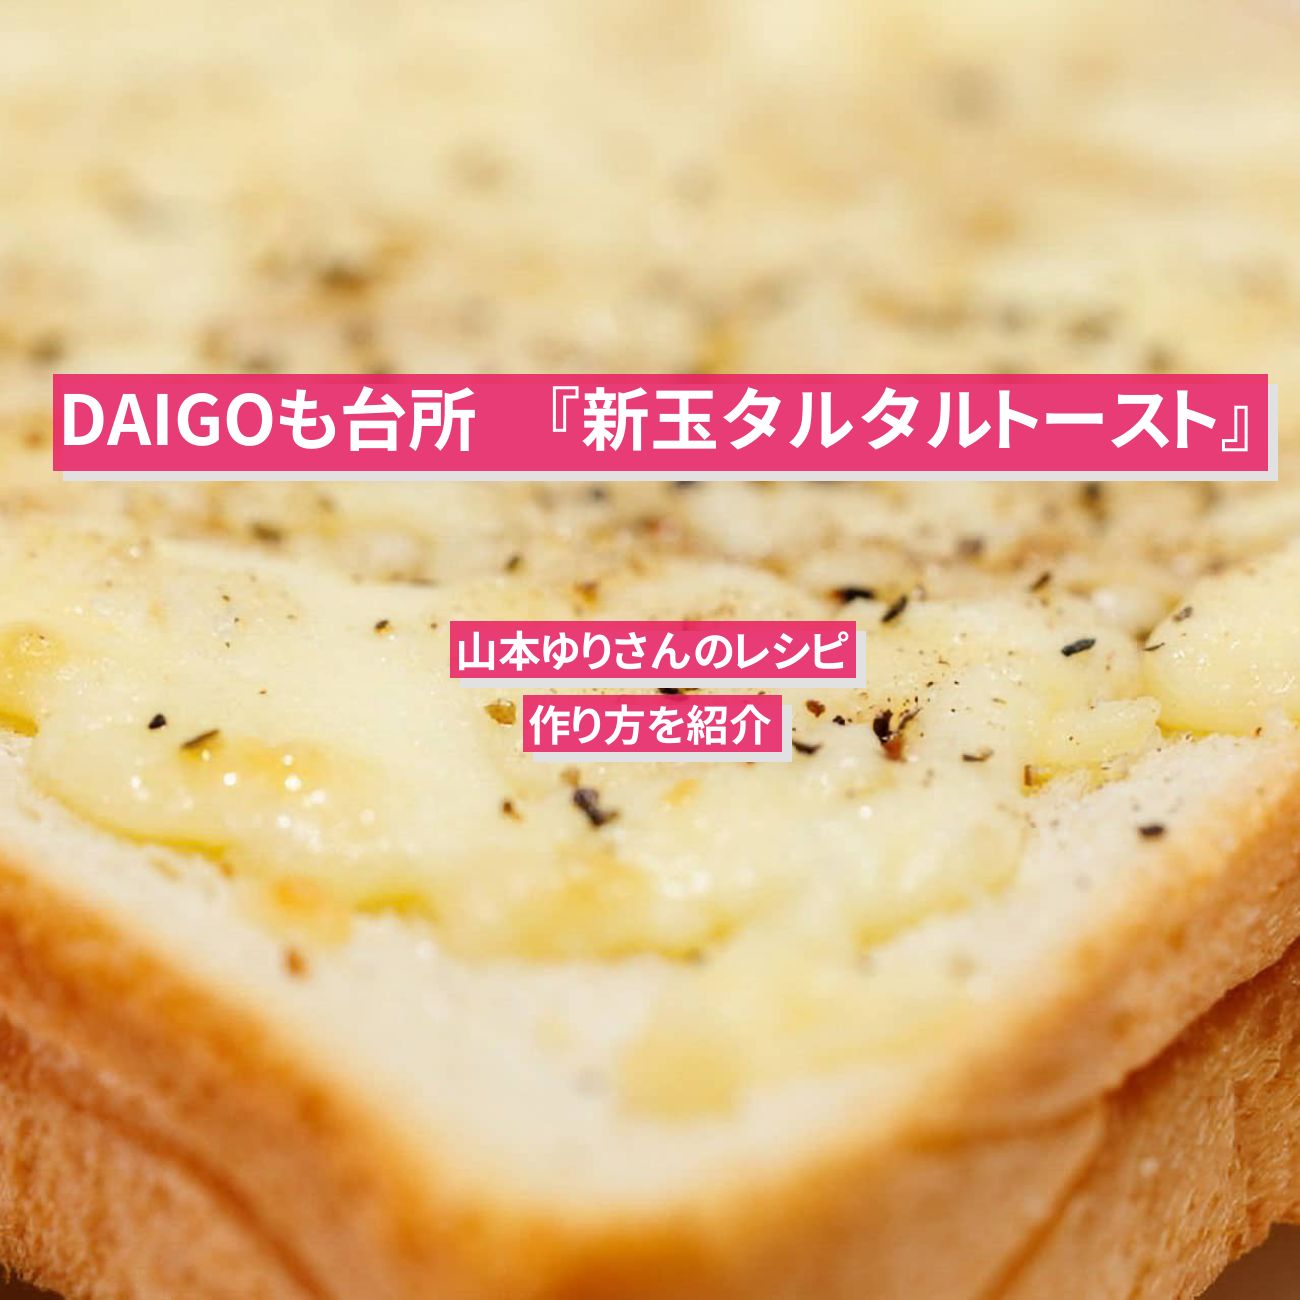 【DAIGOも台所】『新玉タルタルトースト』山本ゆりさんのレシピ・作り方を紹介〔ダイゴも台所〕